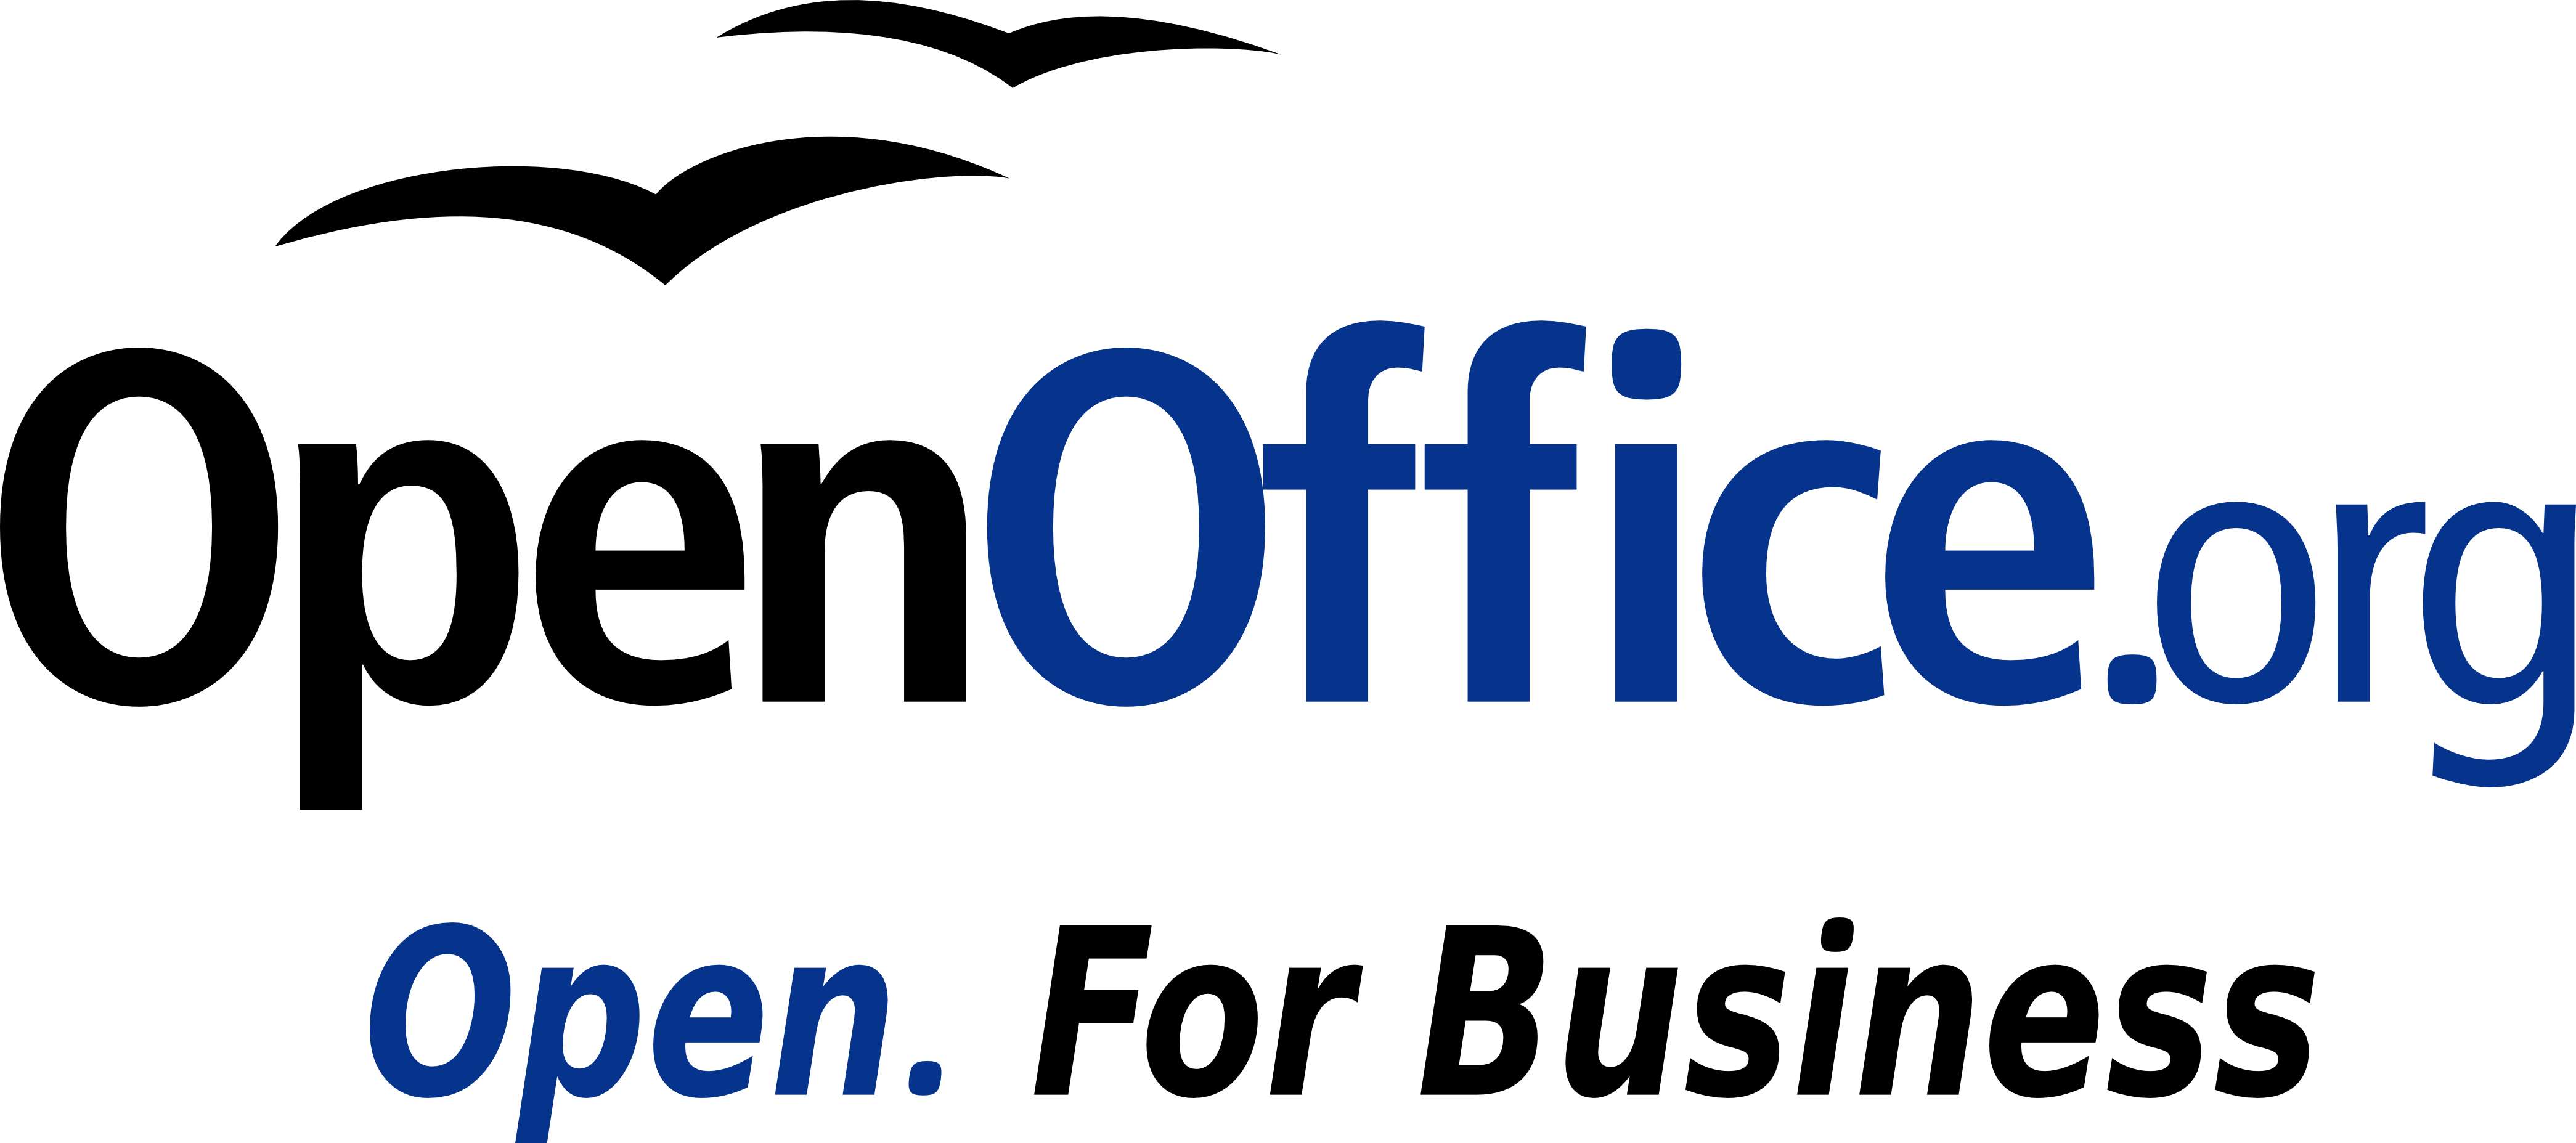 OpenOffice Logo - OpenOffice.org Art Logos Gallery